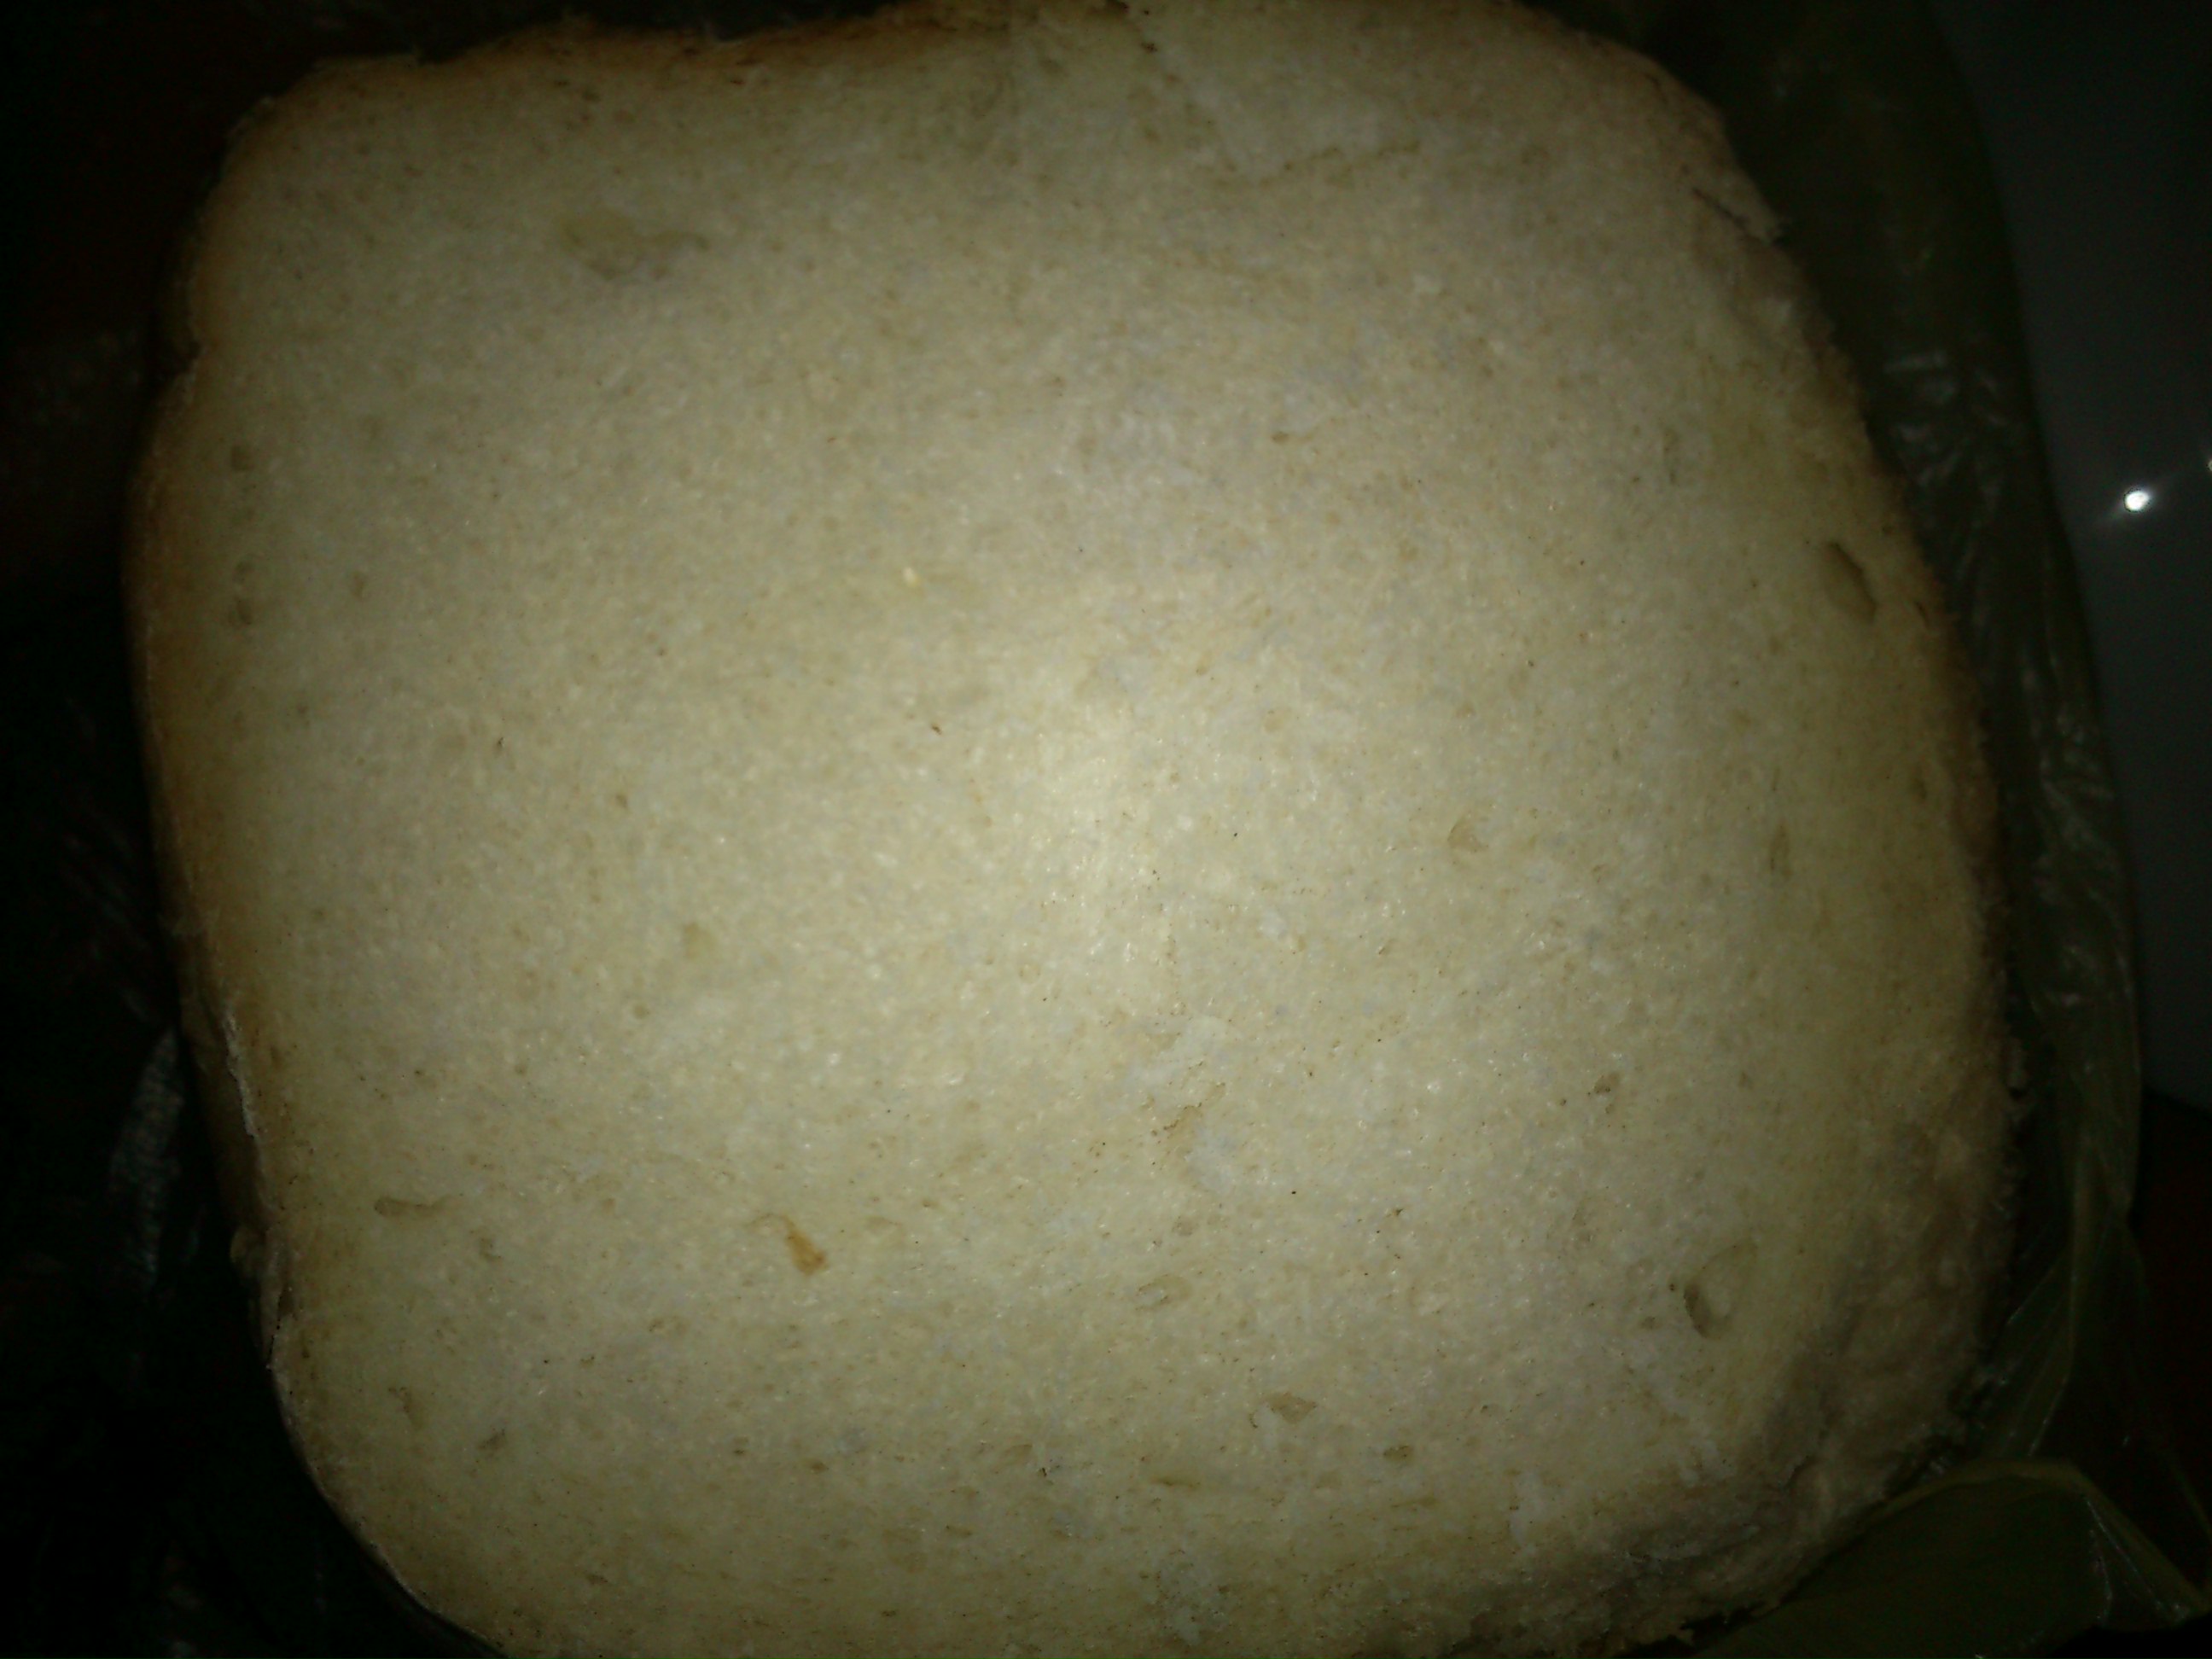 אלסקה BM2600. לחם לבן בייצור לחמים